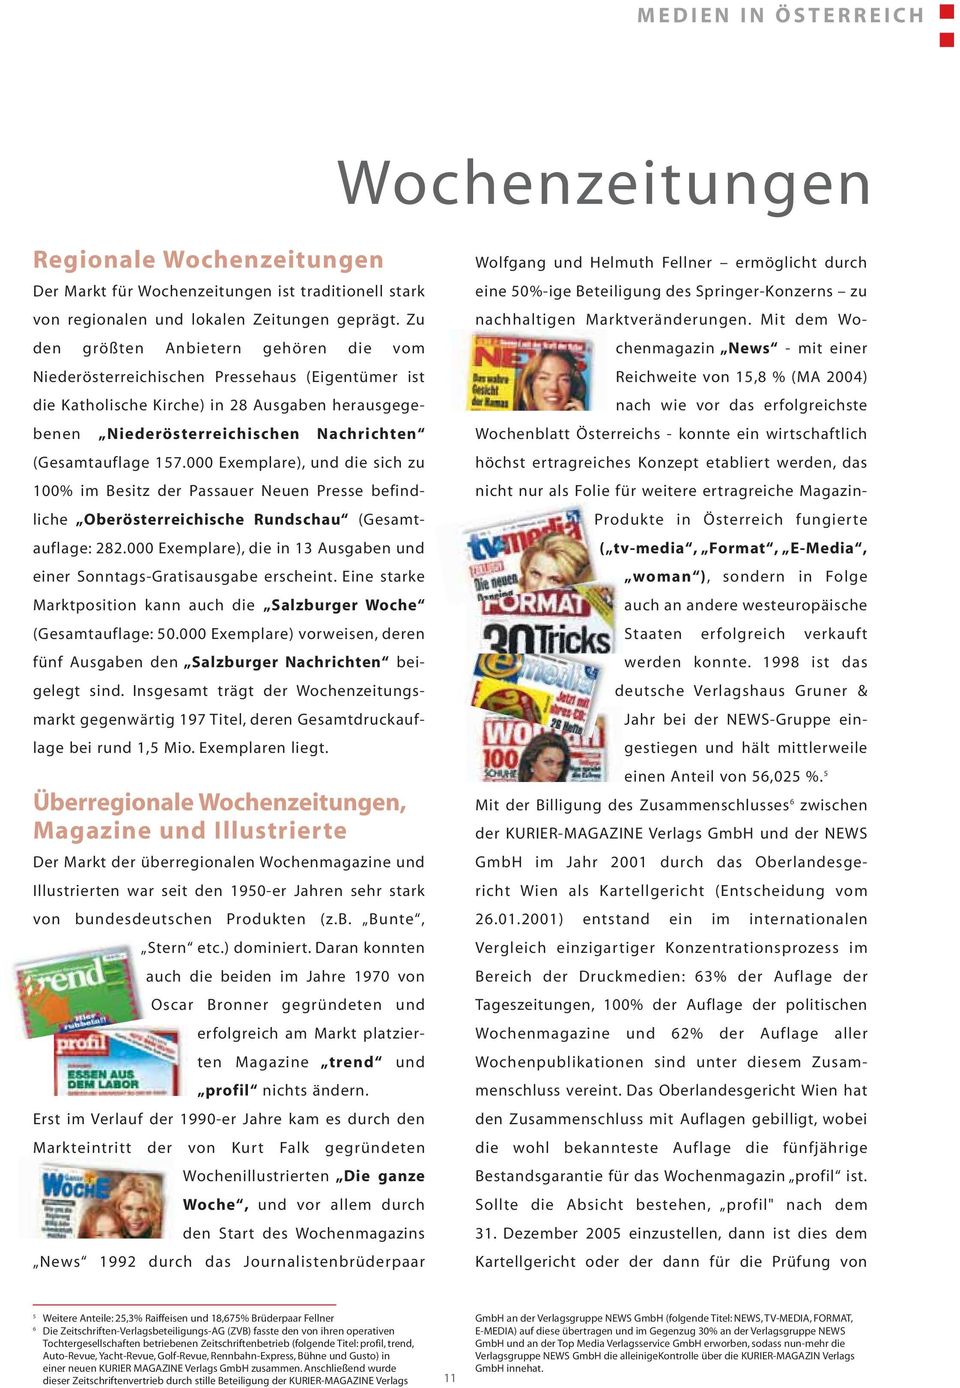 000 Exemplare), und die sich zu 100% im Besitz der Passauer Neuen Presse befindliche Oberösterreichische Rundschau (Gesamtauflage: 282.